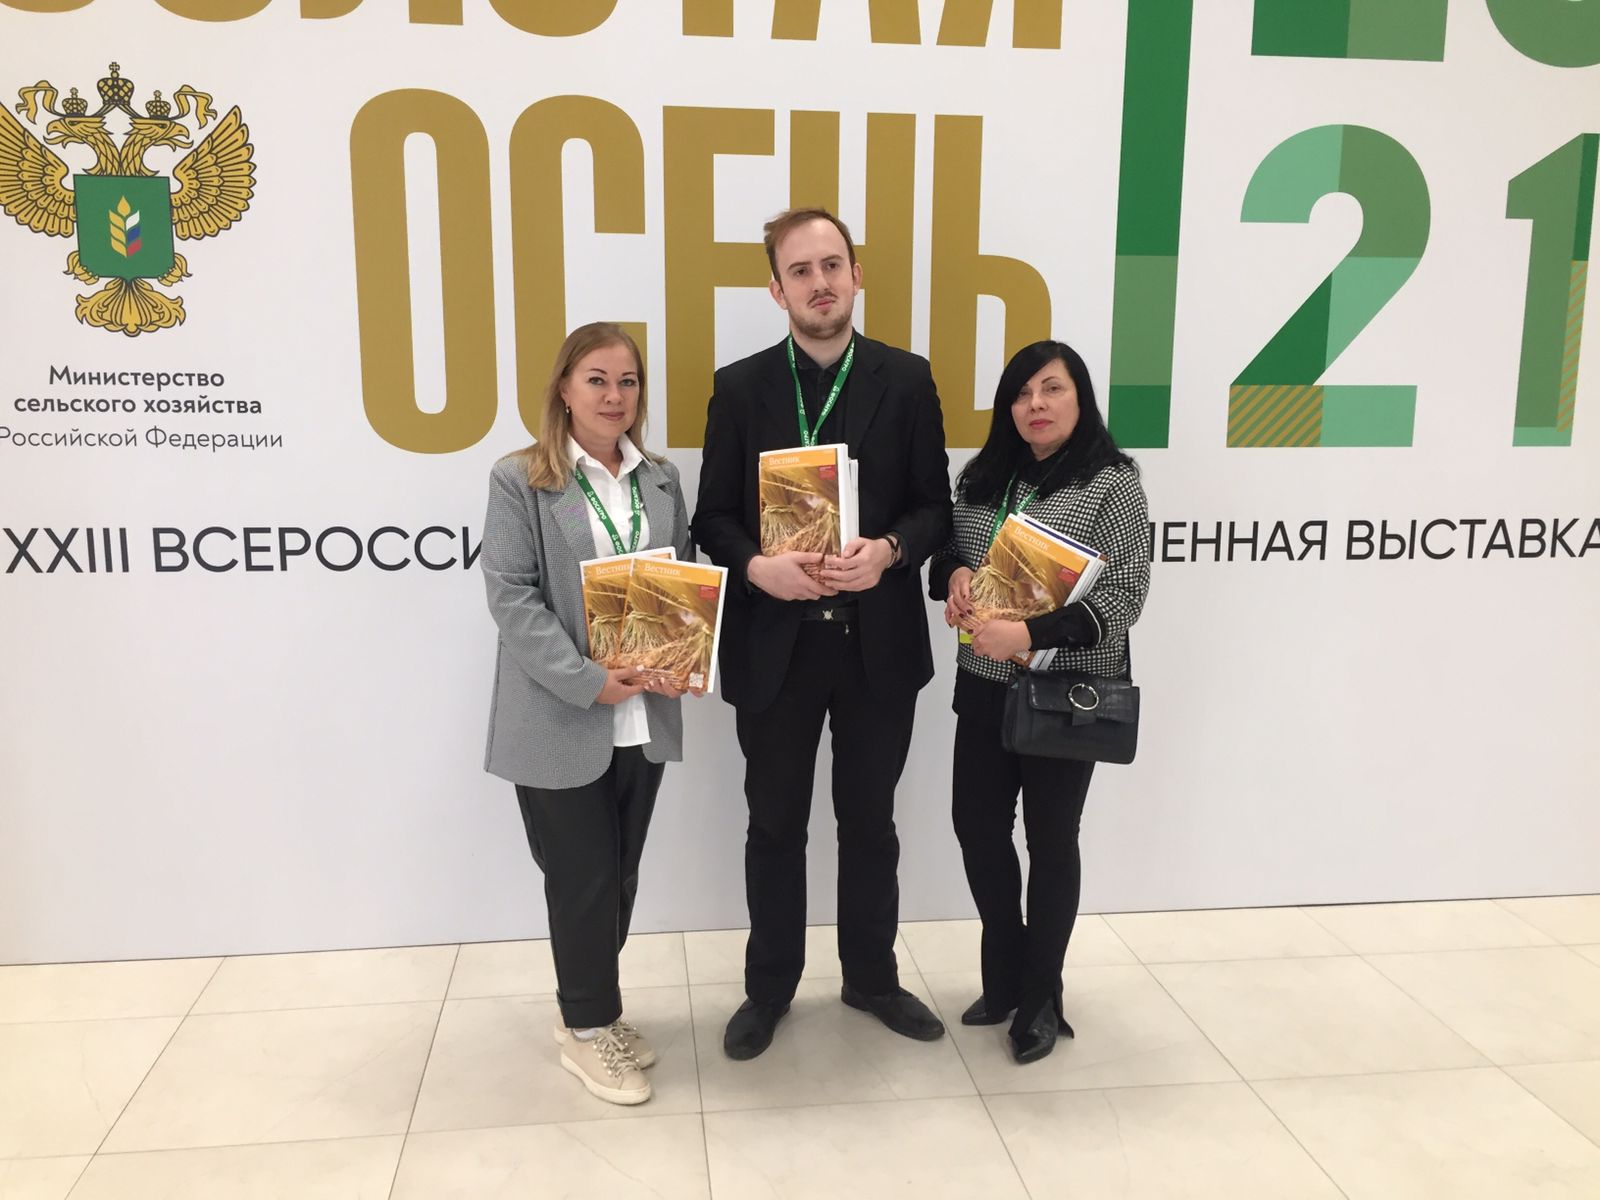 Журнал «Вестник АПК» — партнер российской выставки «Золотая осень», 2021 г. 